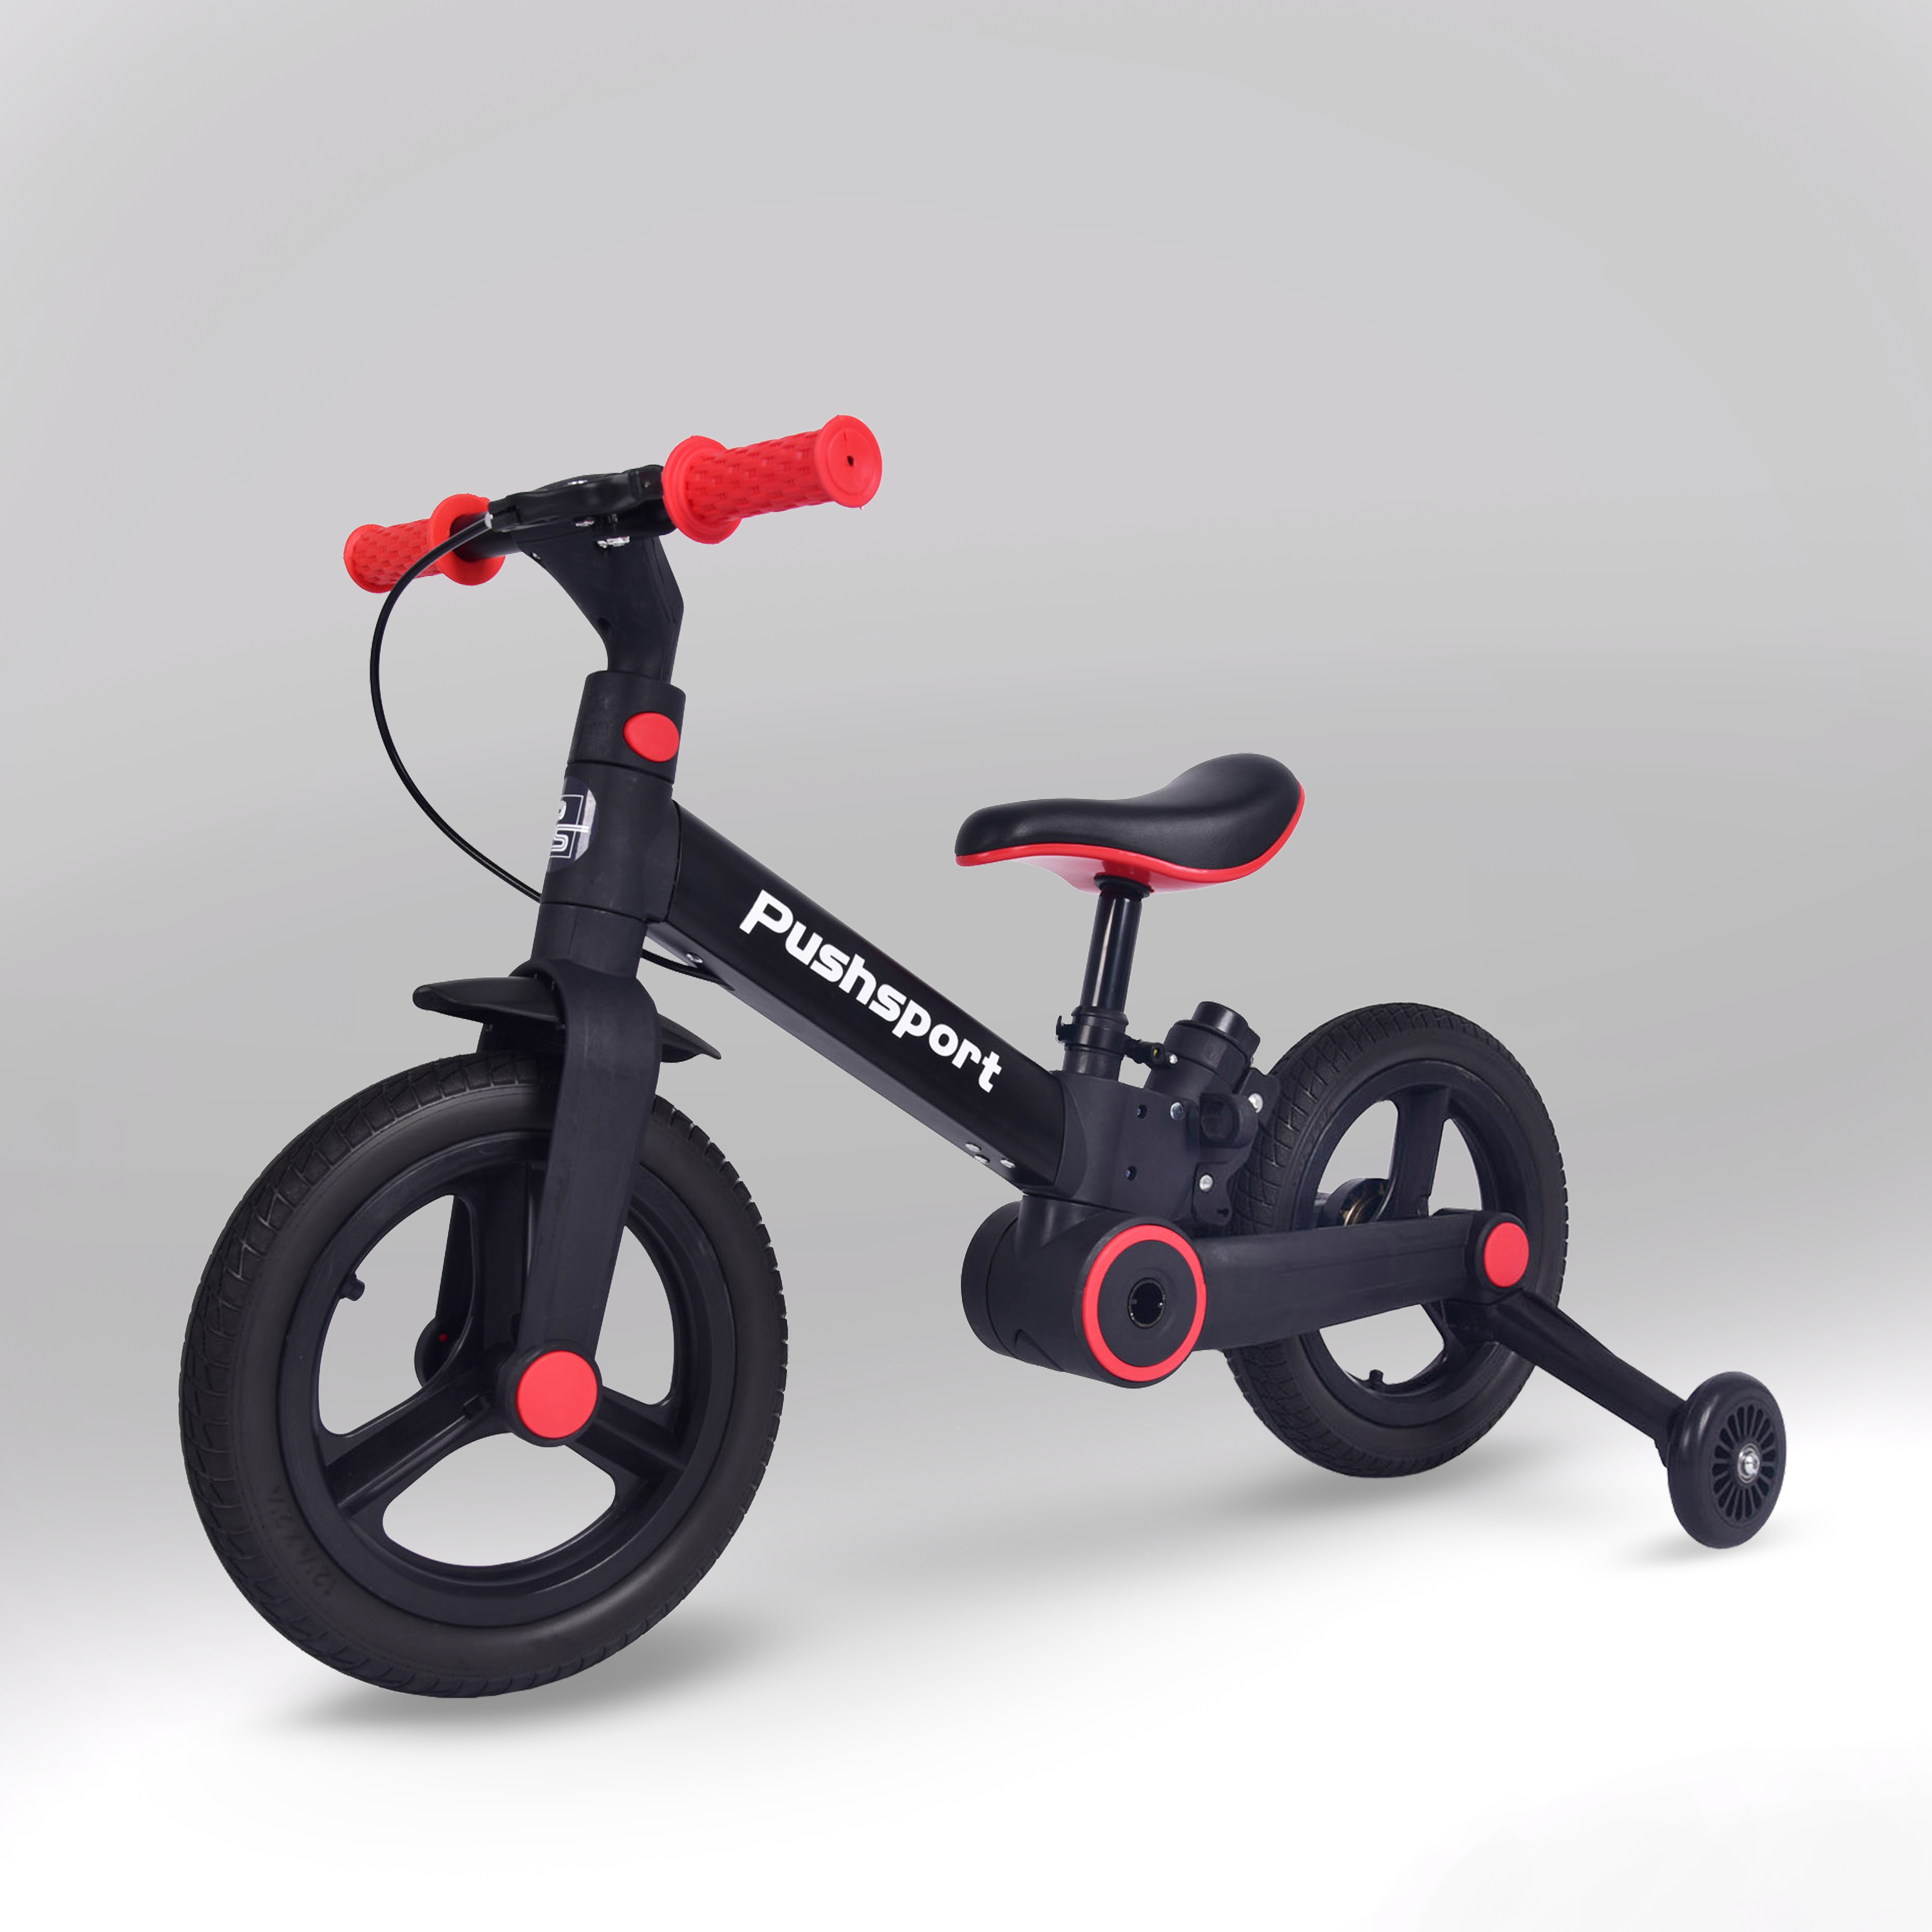 Детский двухколесный велосипед Pushsport черный